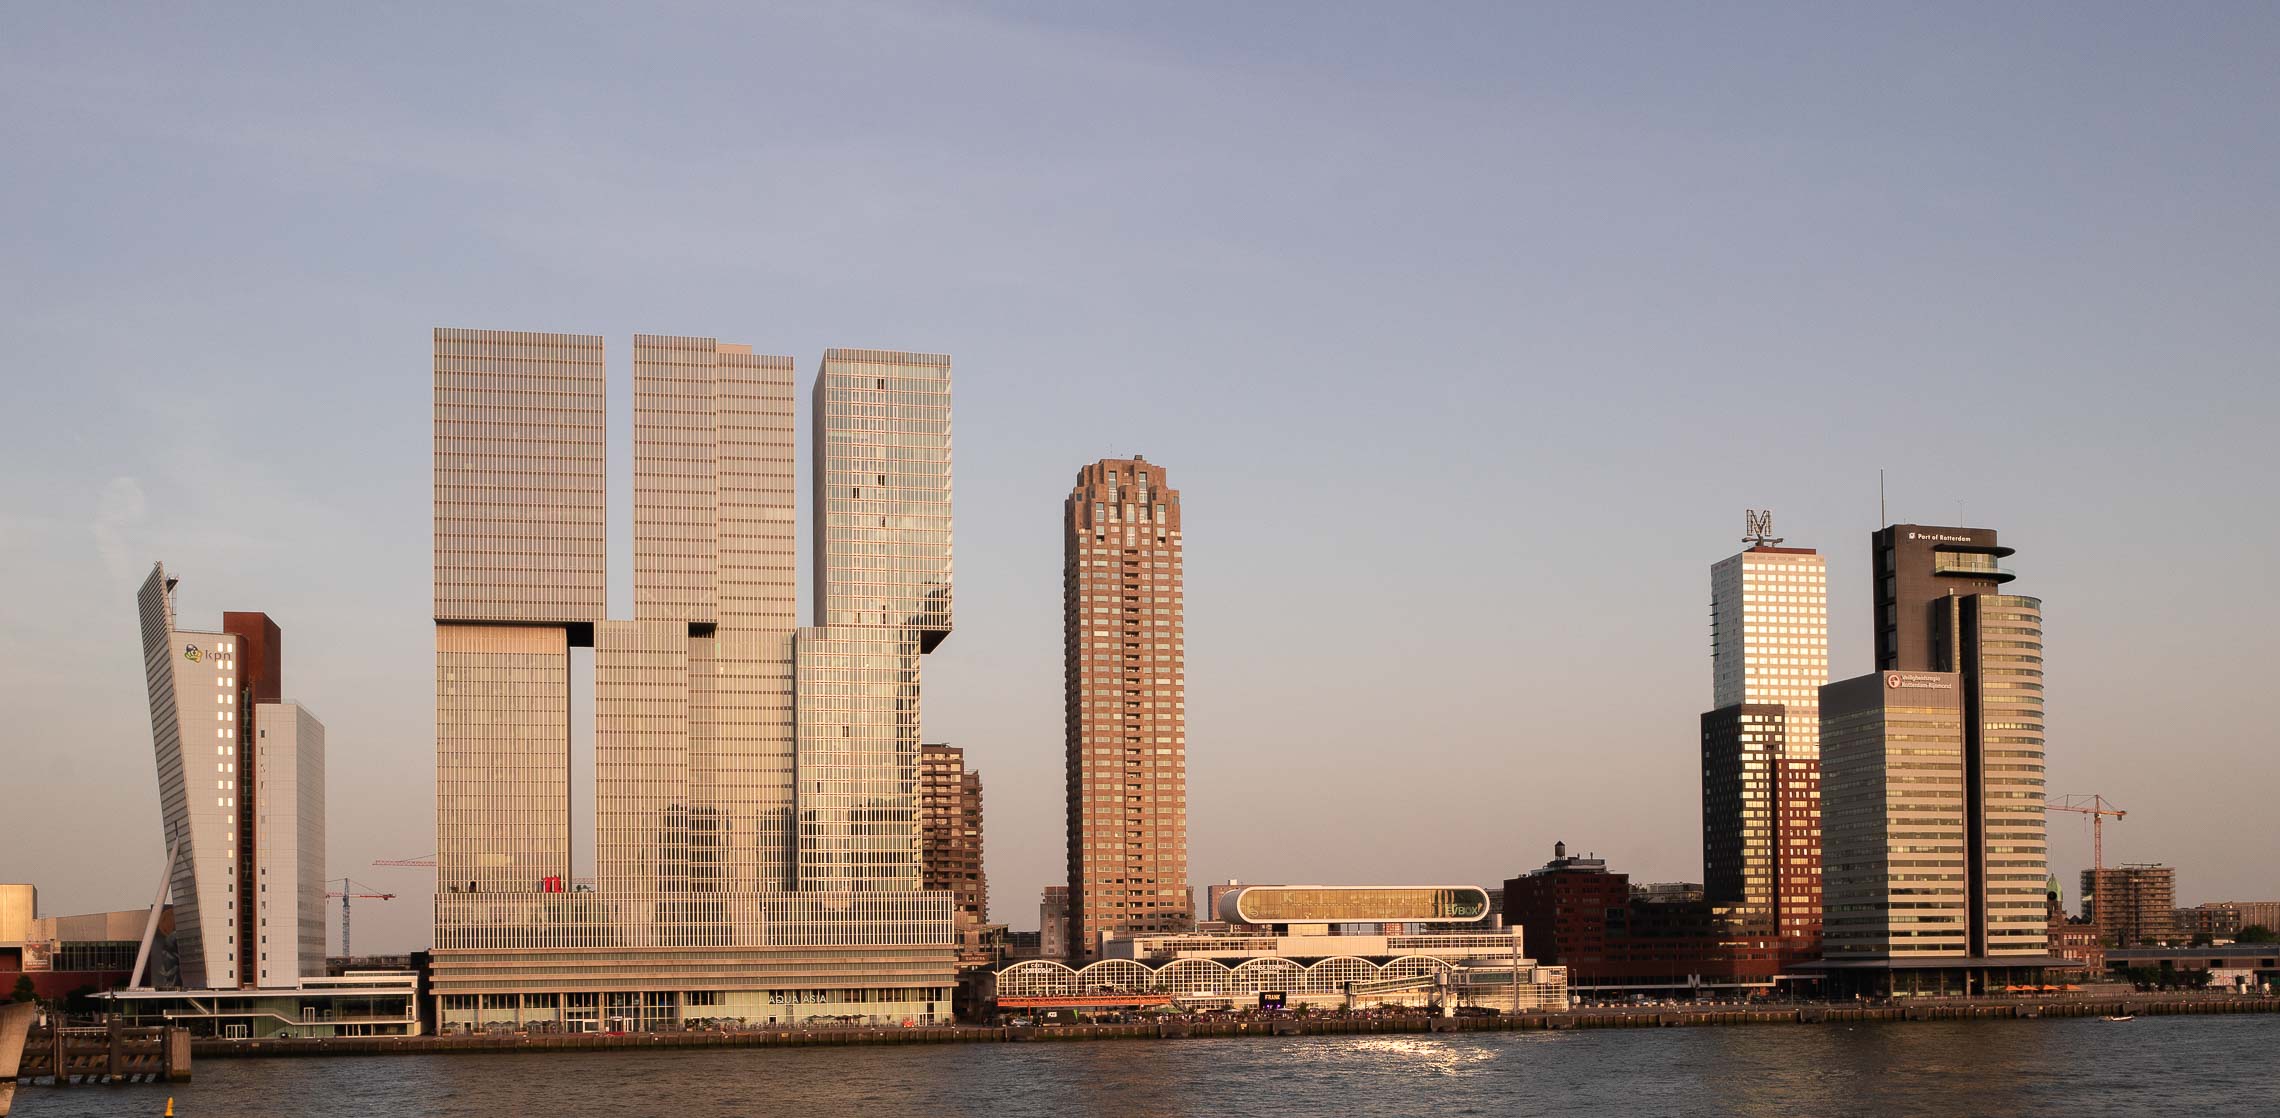 Die Skyline von Rotterdam, die Hafencity Kop van Zuid an der neuen Maas.